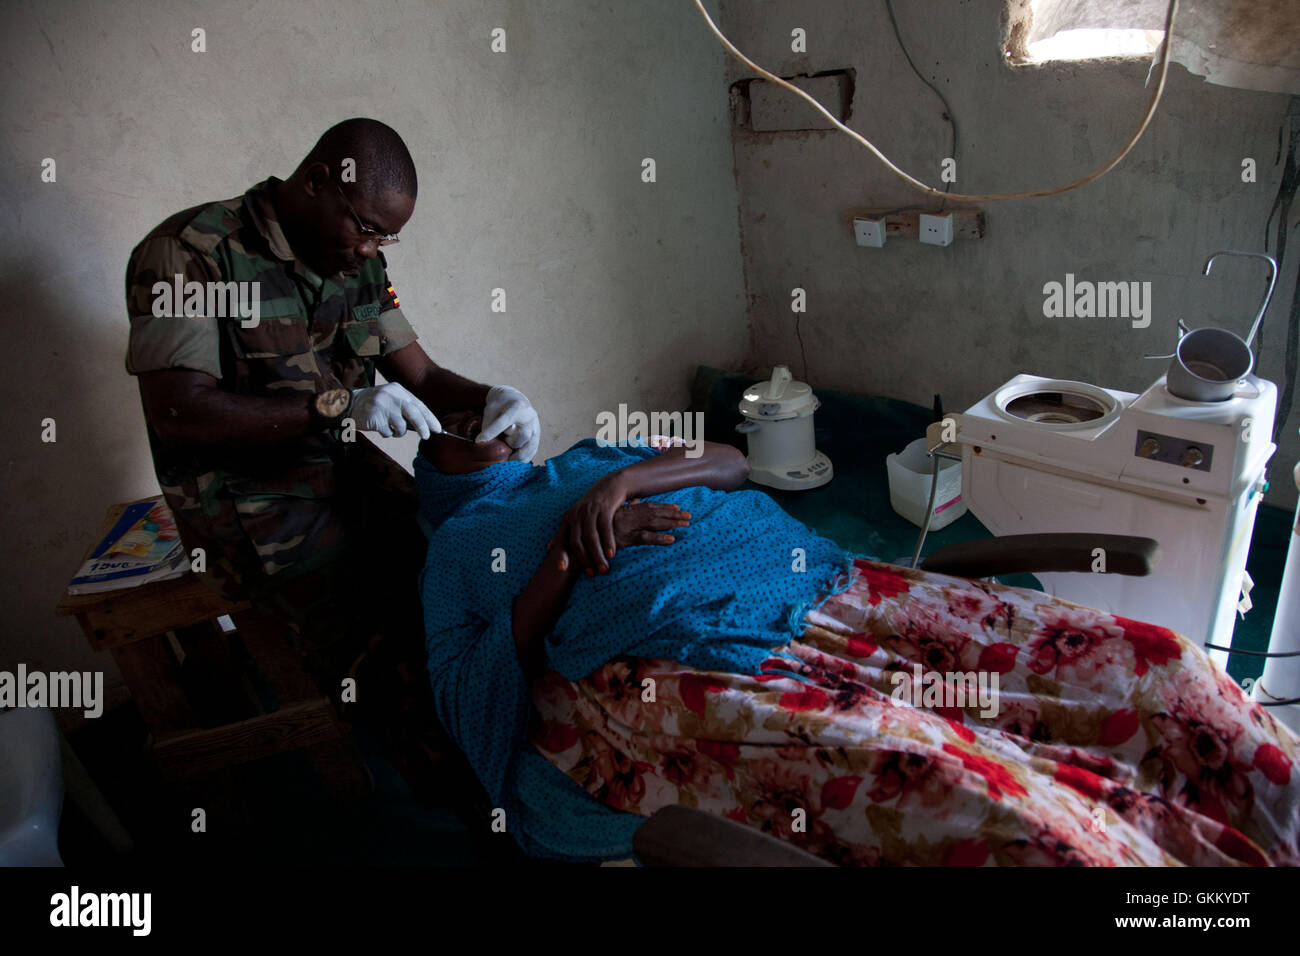 10/09/11, Mogadishu, Somalia - An AMISOM dentist treats a woman at the OPD in Mogadishu, Somalia Stock Photo